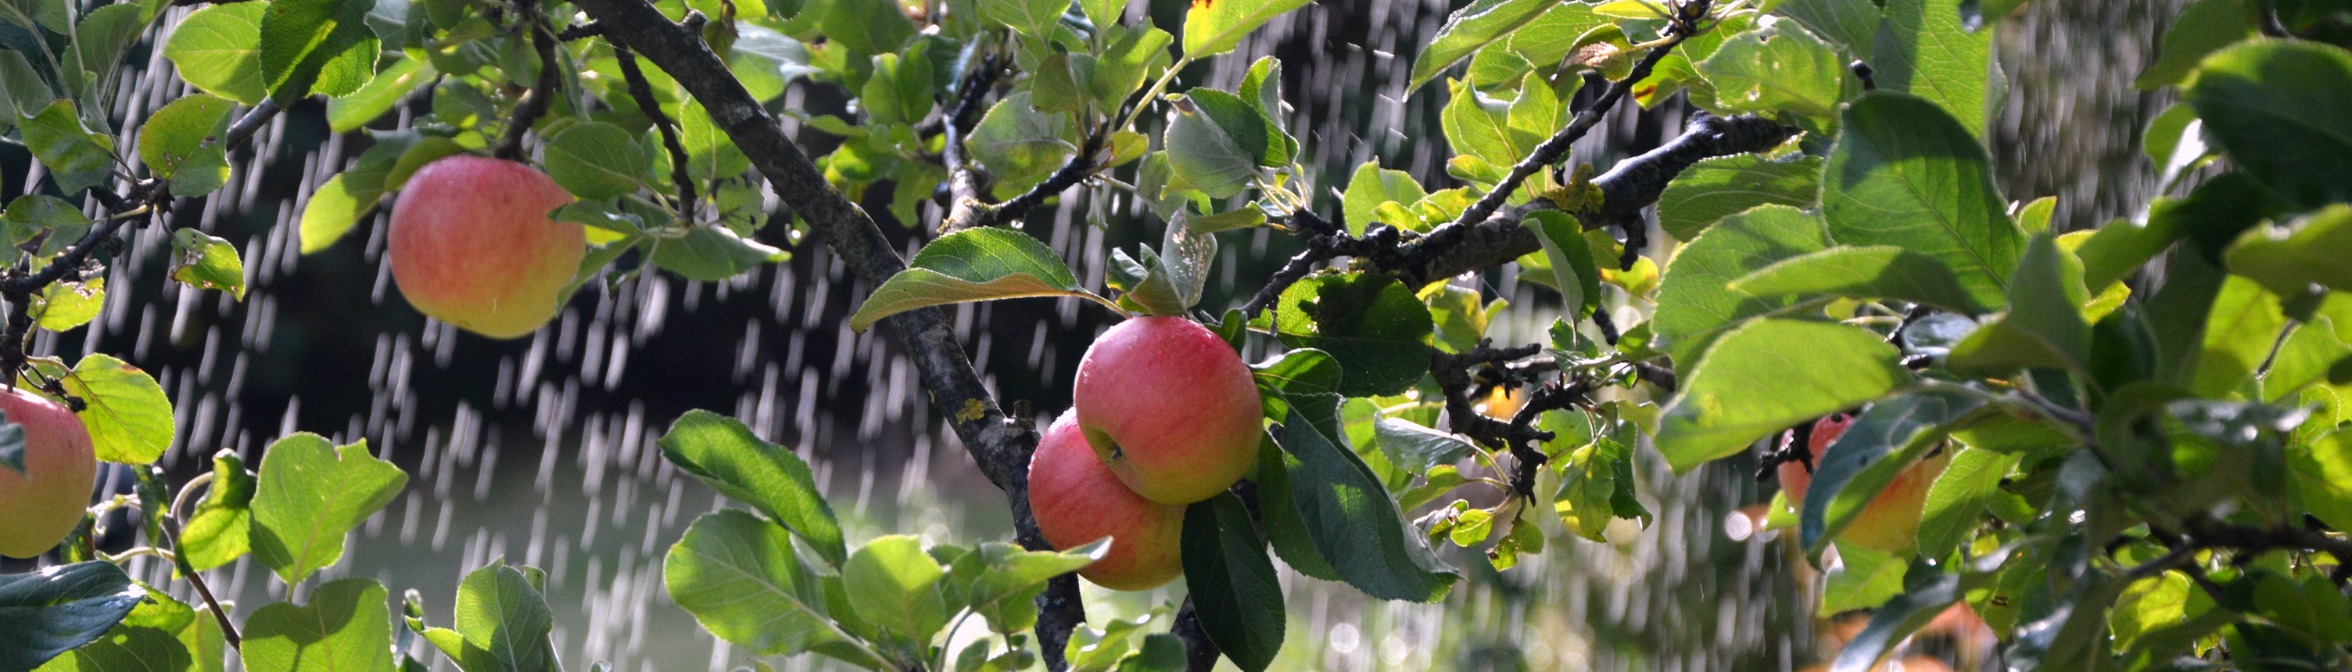 5 простых шагов, как правильно белить яблони — Ozon Клуб